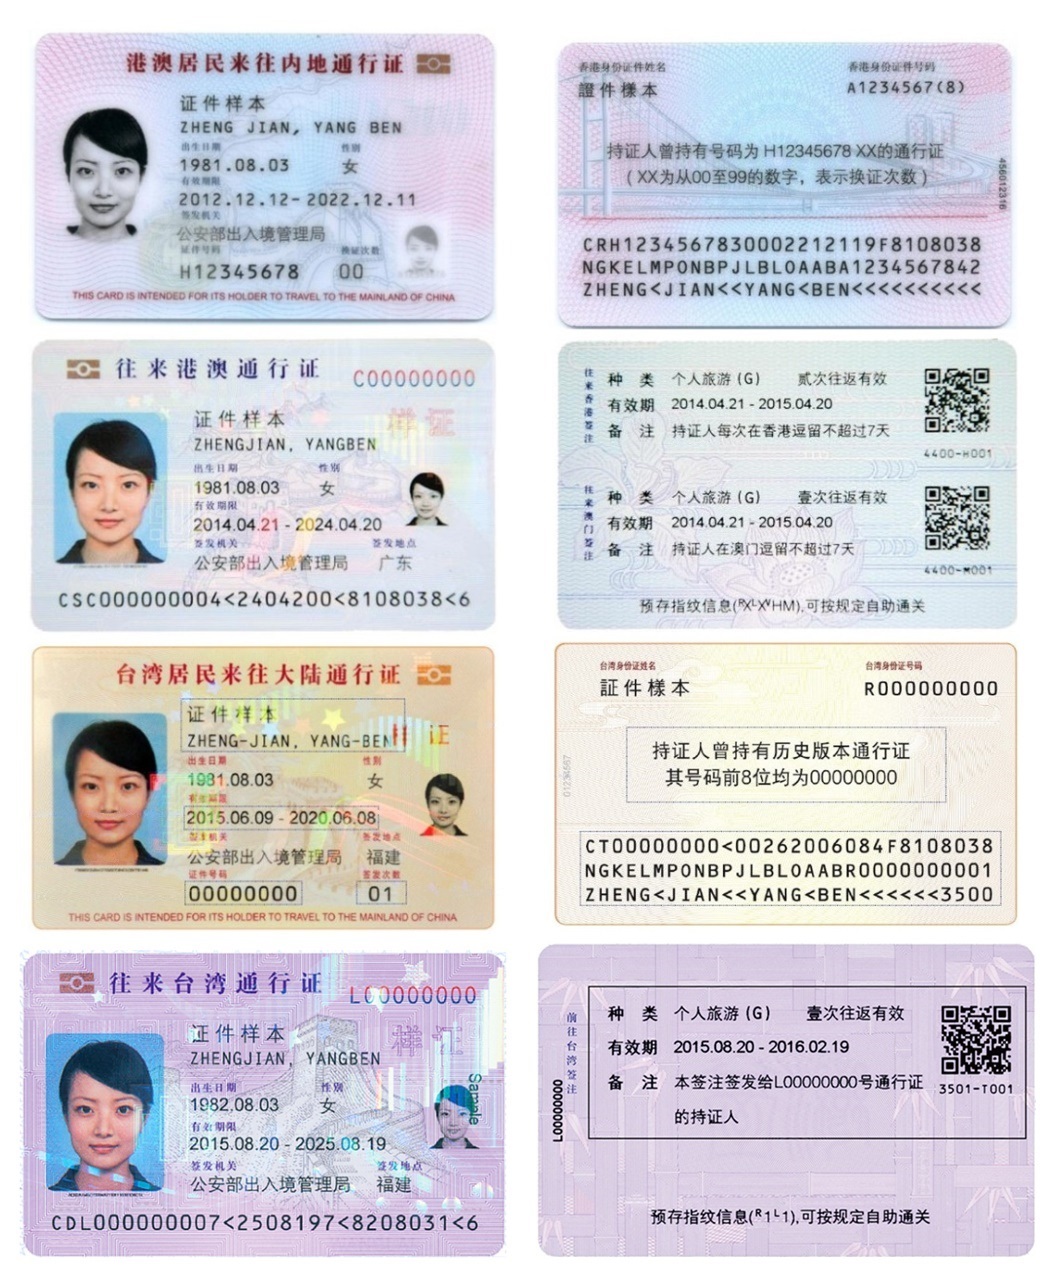 中華人民共和國往來港澳通行證(往來港澳通行證)